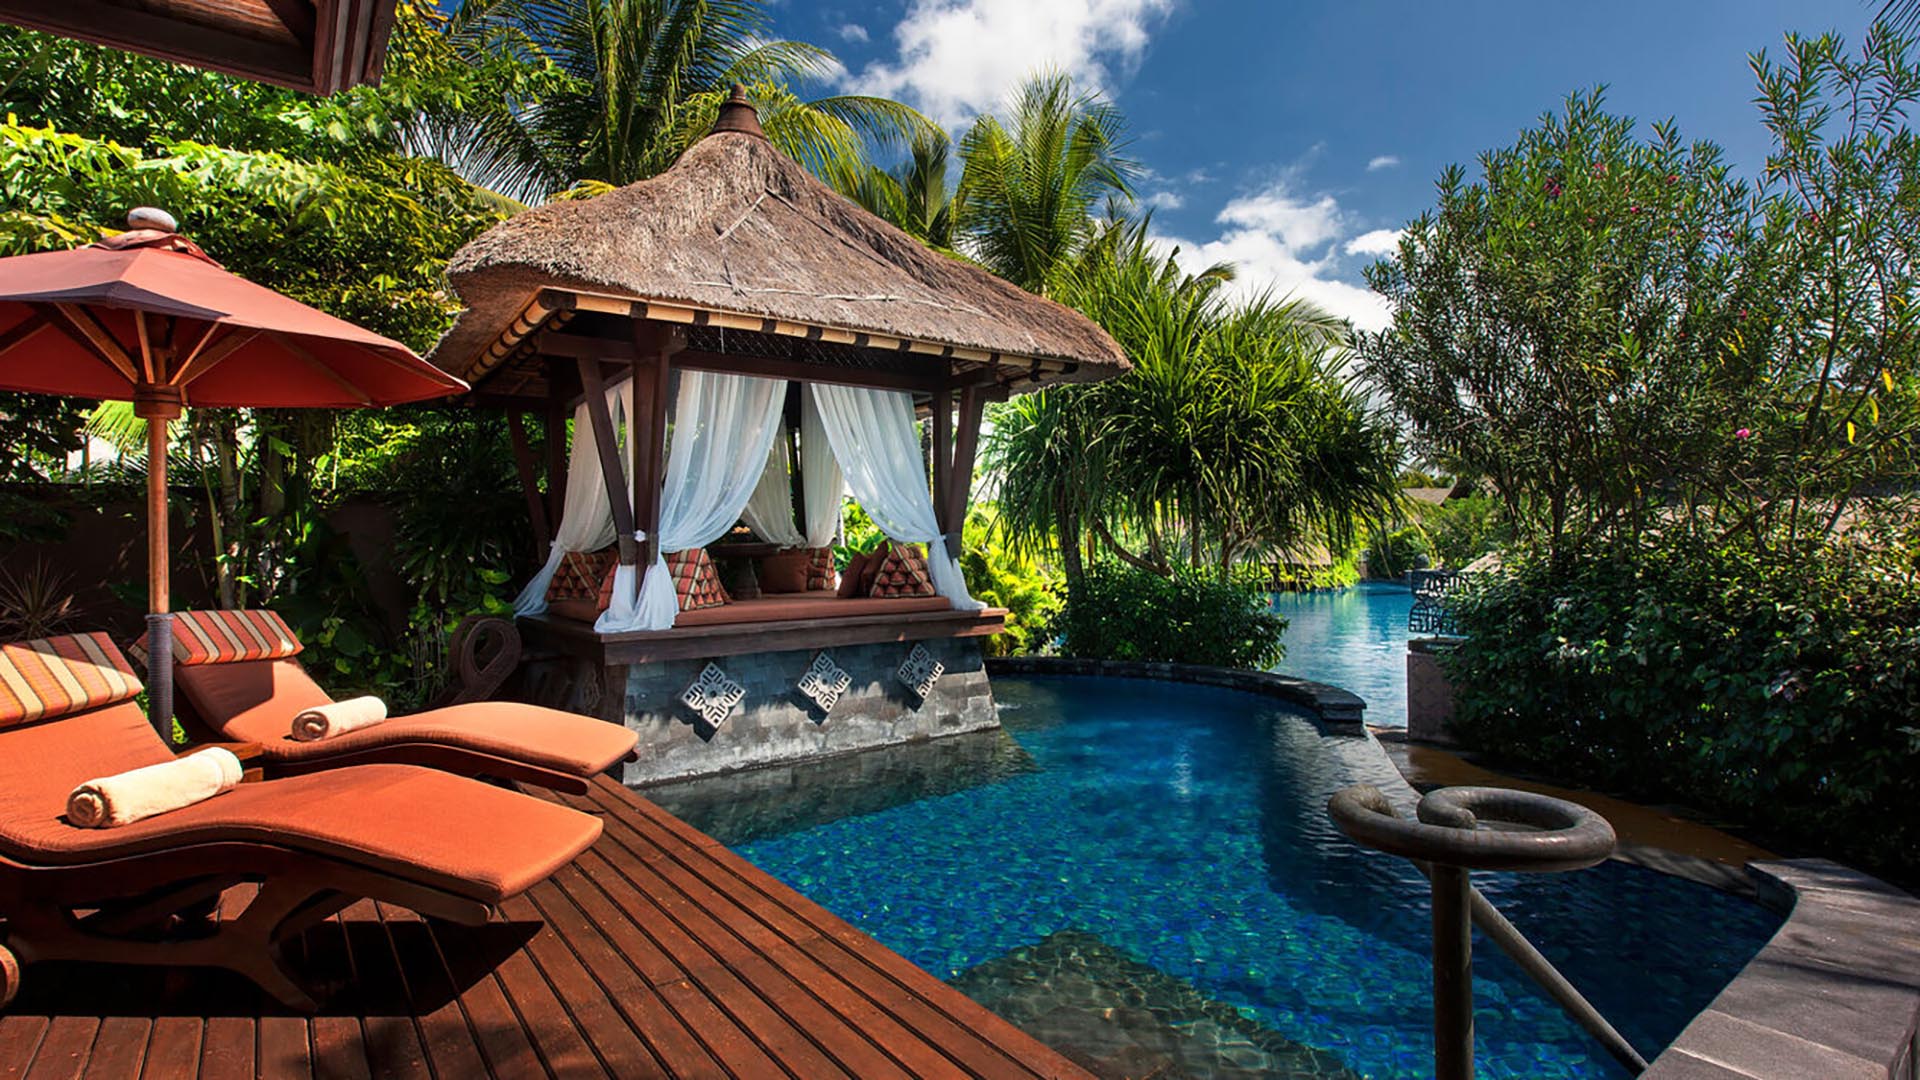 The St. Regis Bali Resort, Bali